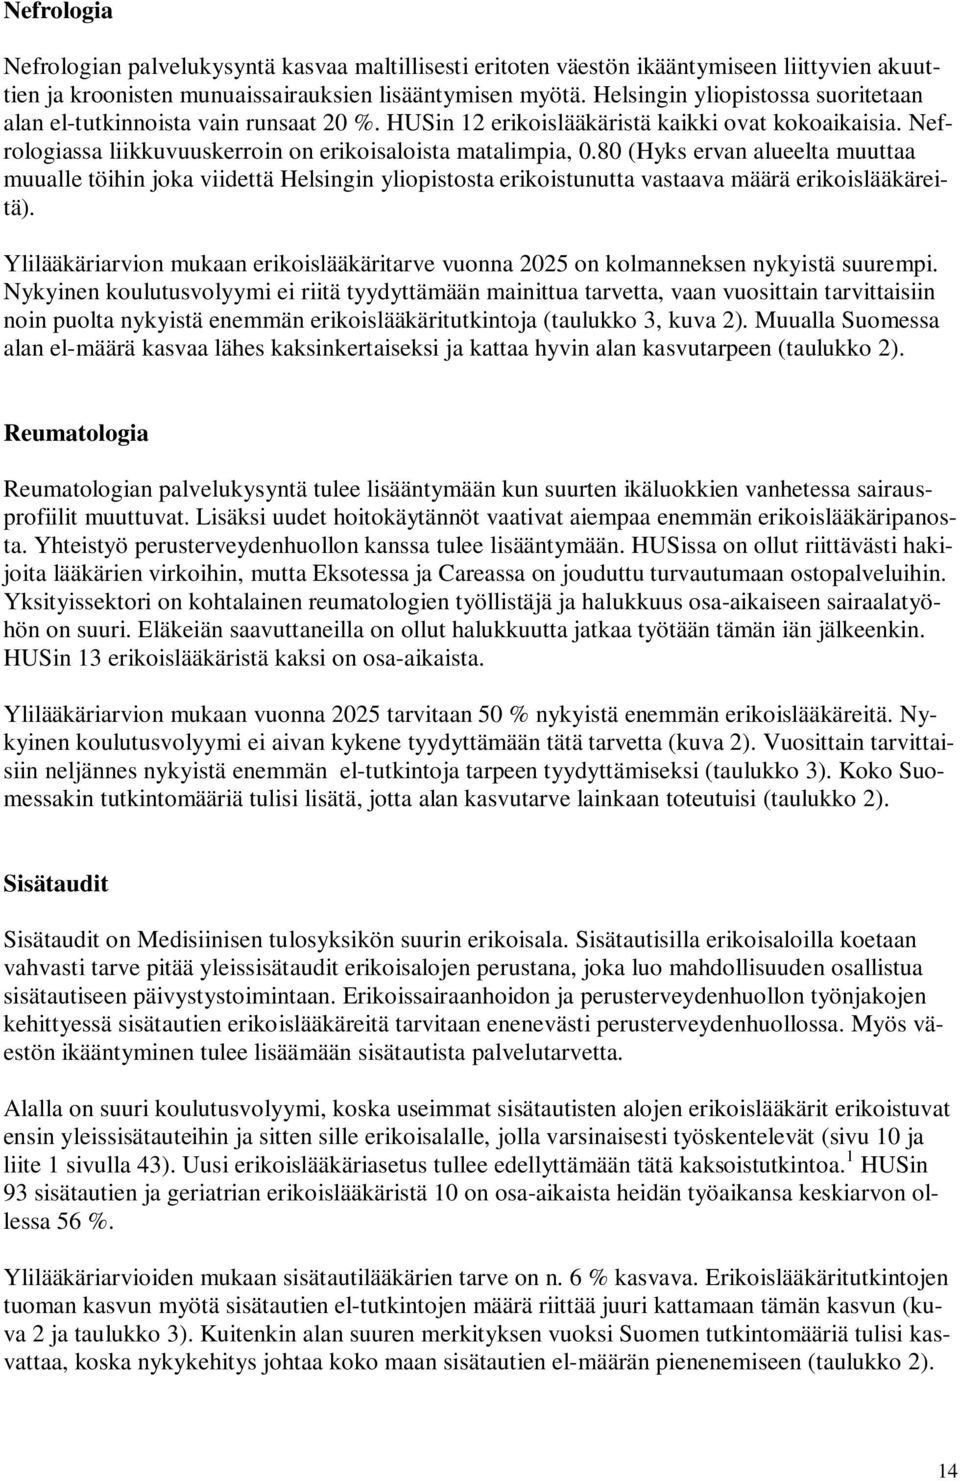 8 (Hyks ervan alueelta muuttaa muualle töihin joka viidettä Helsingin yliopistosta erikoistunutta vastaava määrä erikoislääkäreitä).